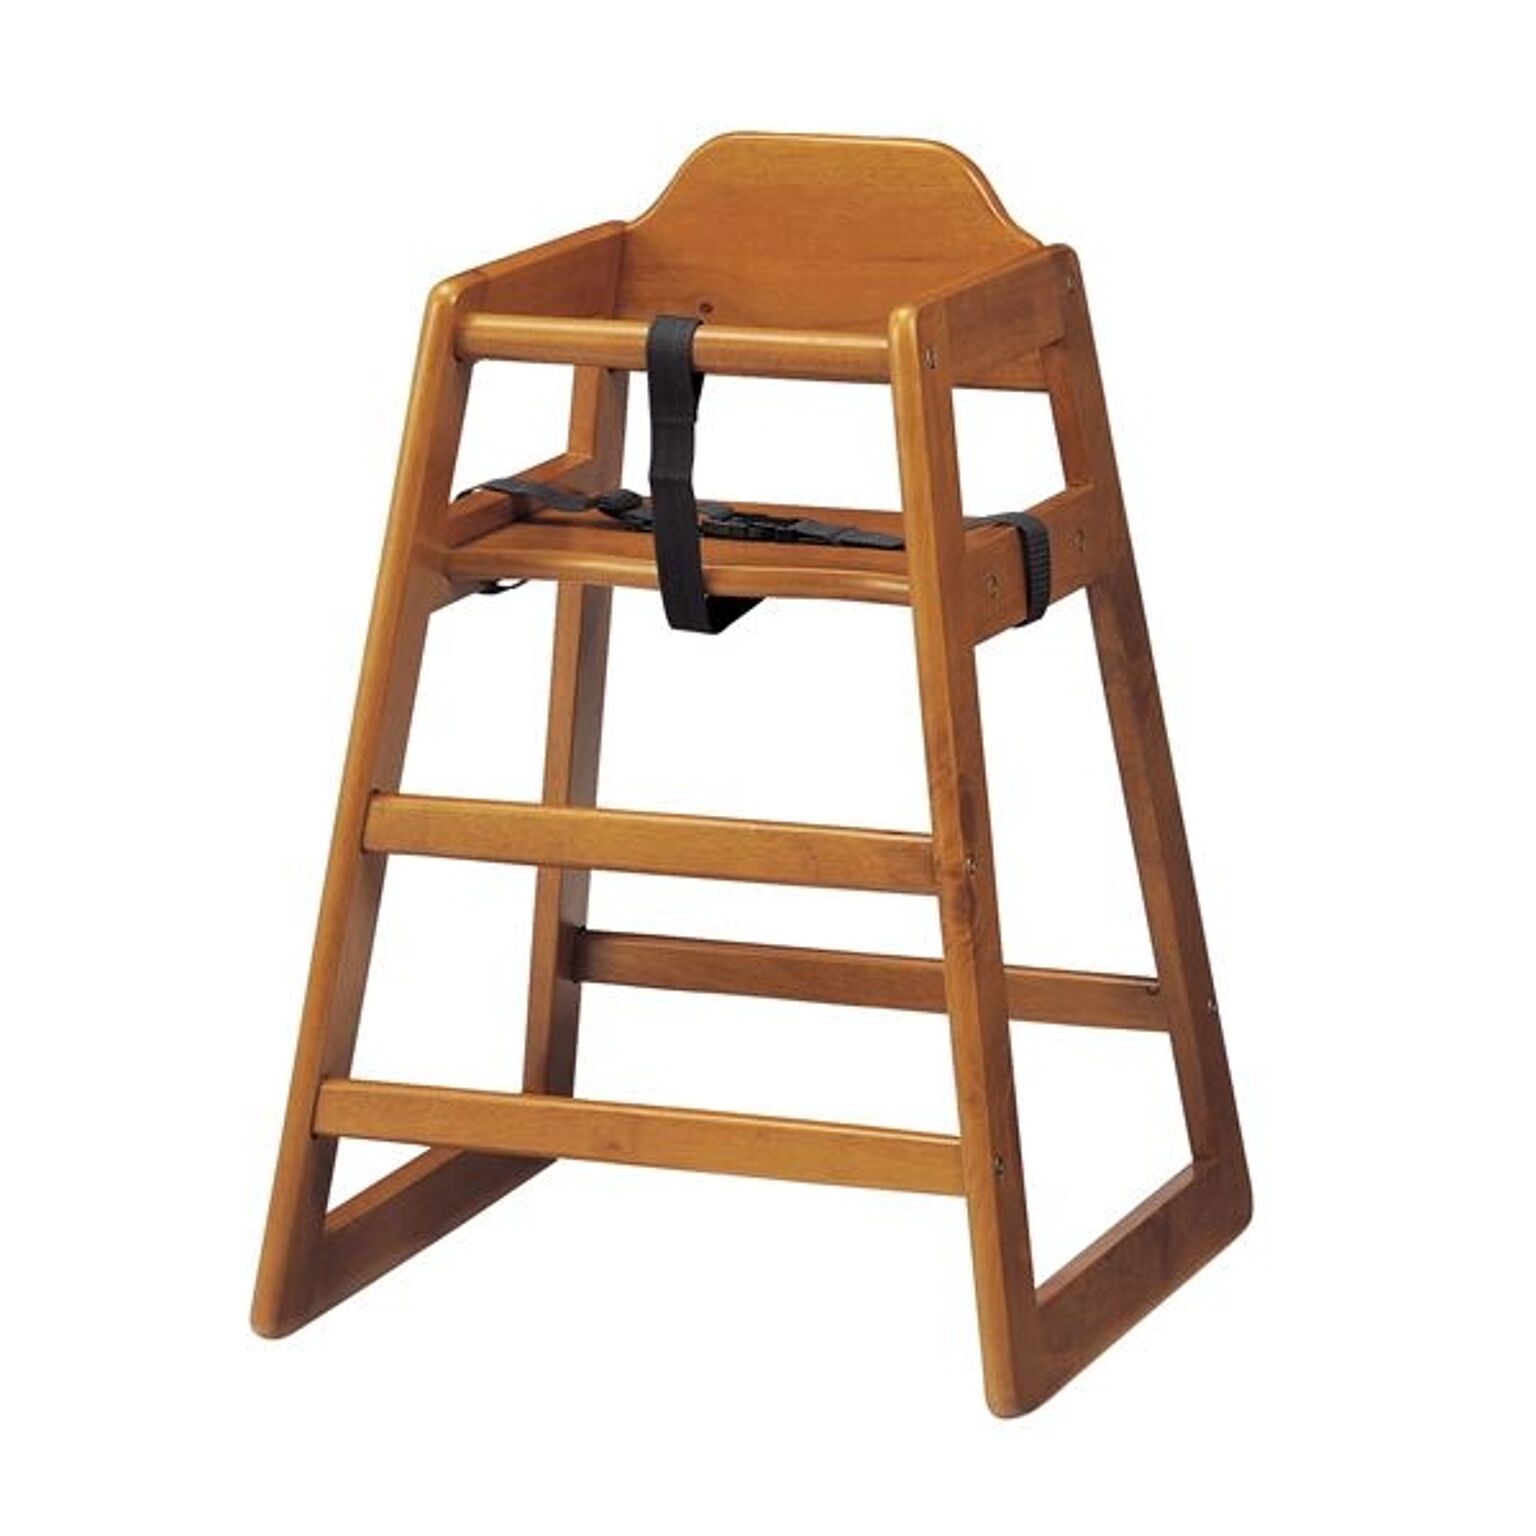 ベビーチェア/赤ちゃん椅子 【ブラウン】 幅520mm 木製 スタッキング可 対象年齢：6ヶ月〜5才頃 〔プレゼント〕 組立品【代引不可】